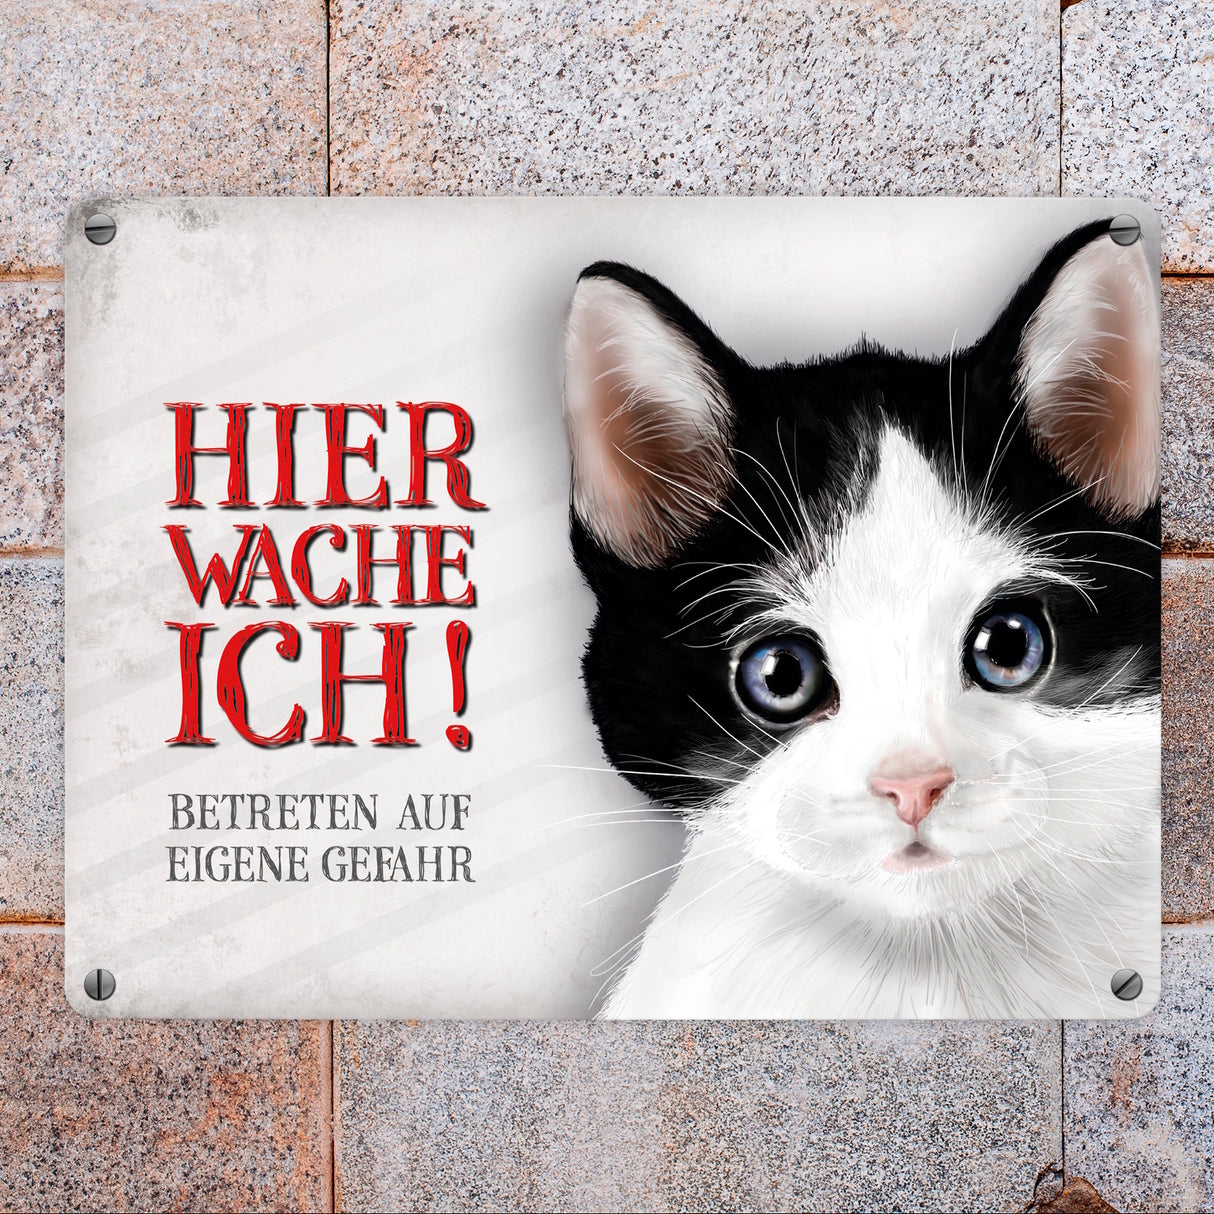 Metallschild mit Katze Motiv und Spruch: Betreten auf eigene Gefahr ...